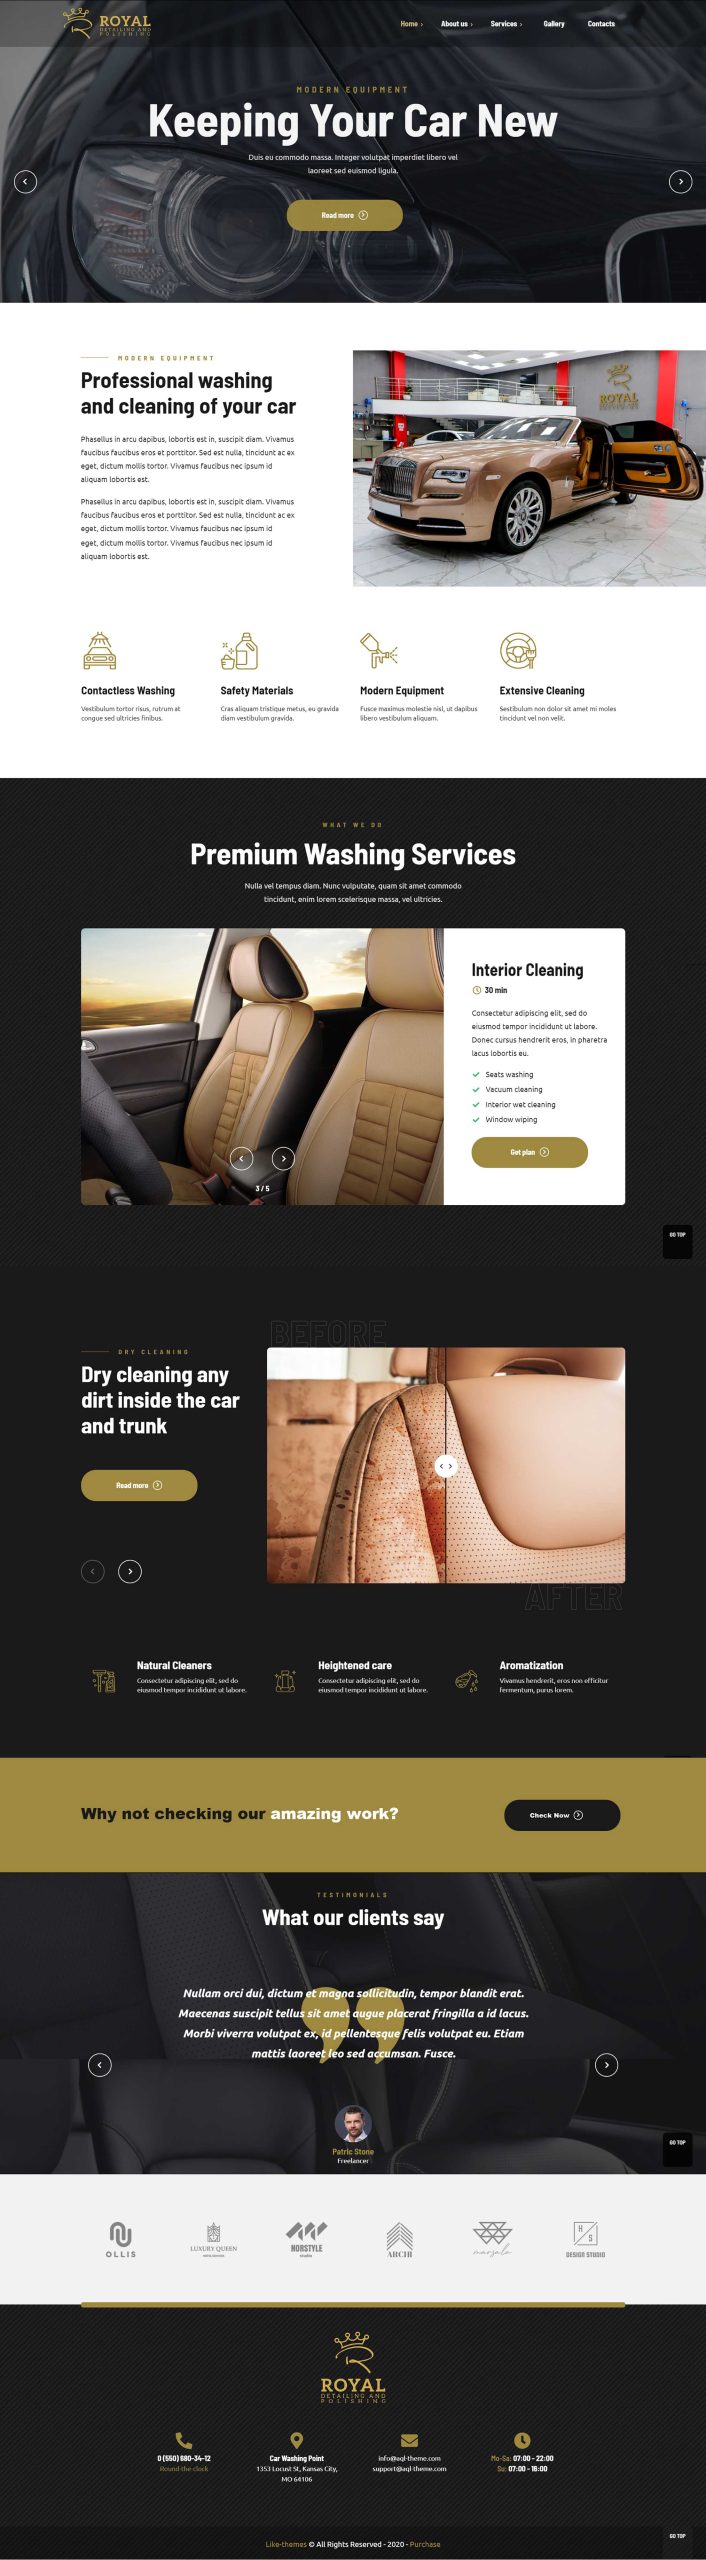 Website design for Royal Cars - 360beats portfolio